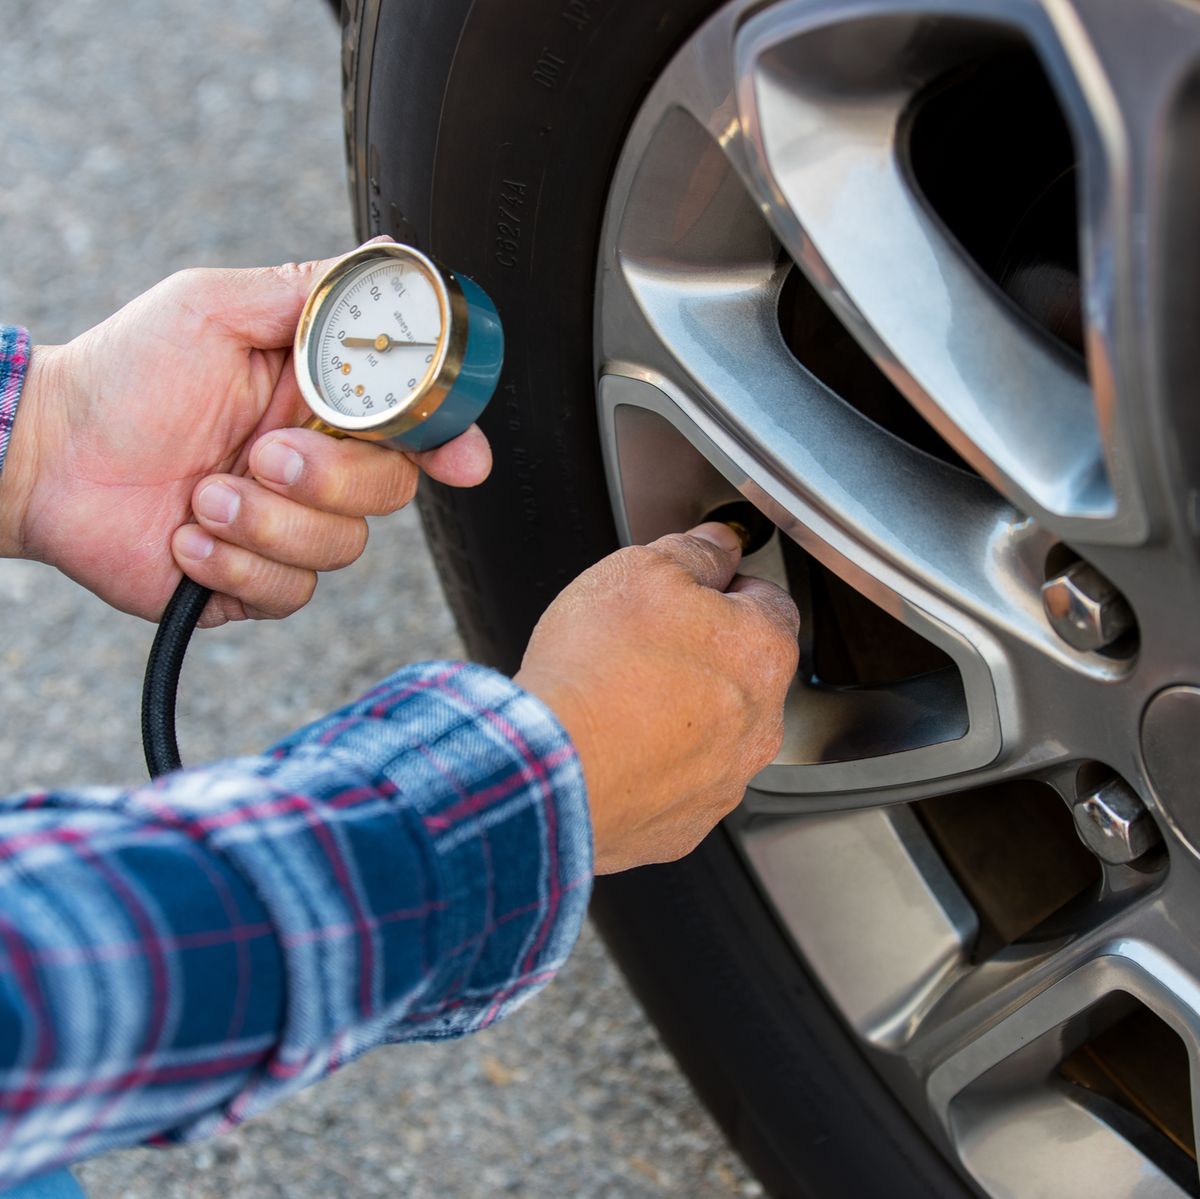 La presión de los neumáticos y los manómetros (I)